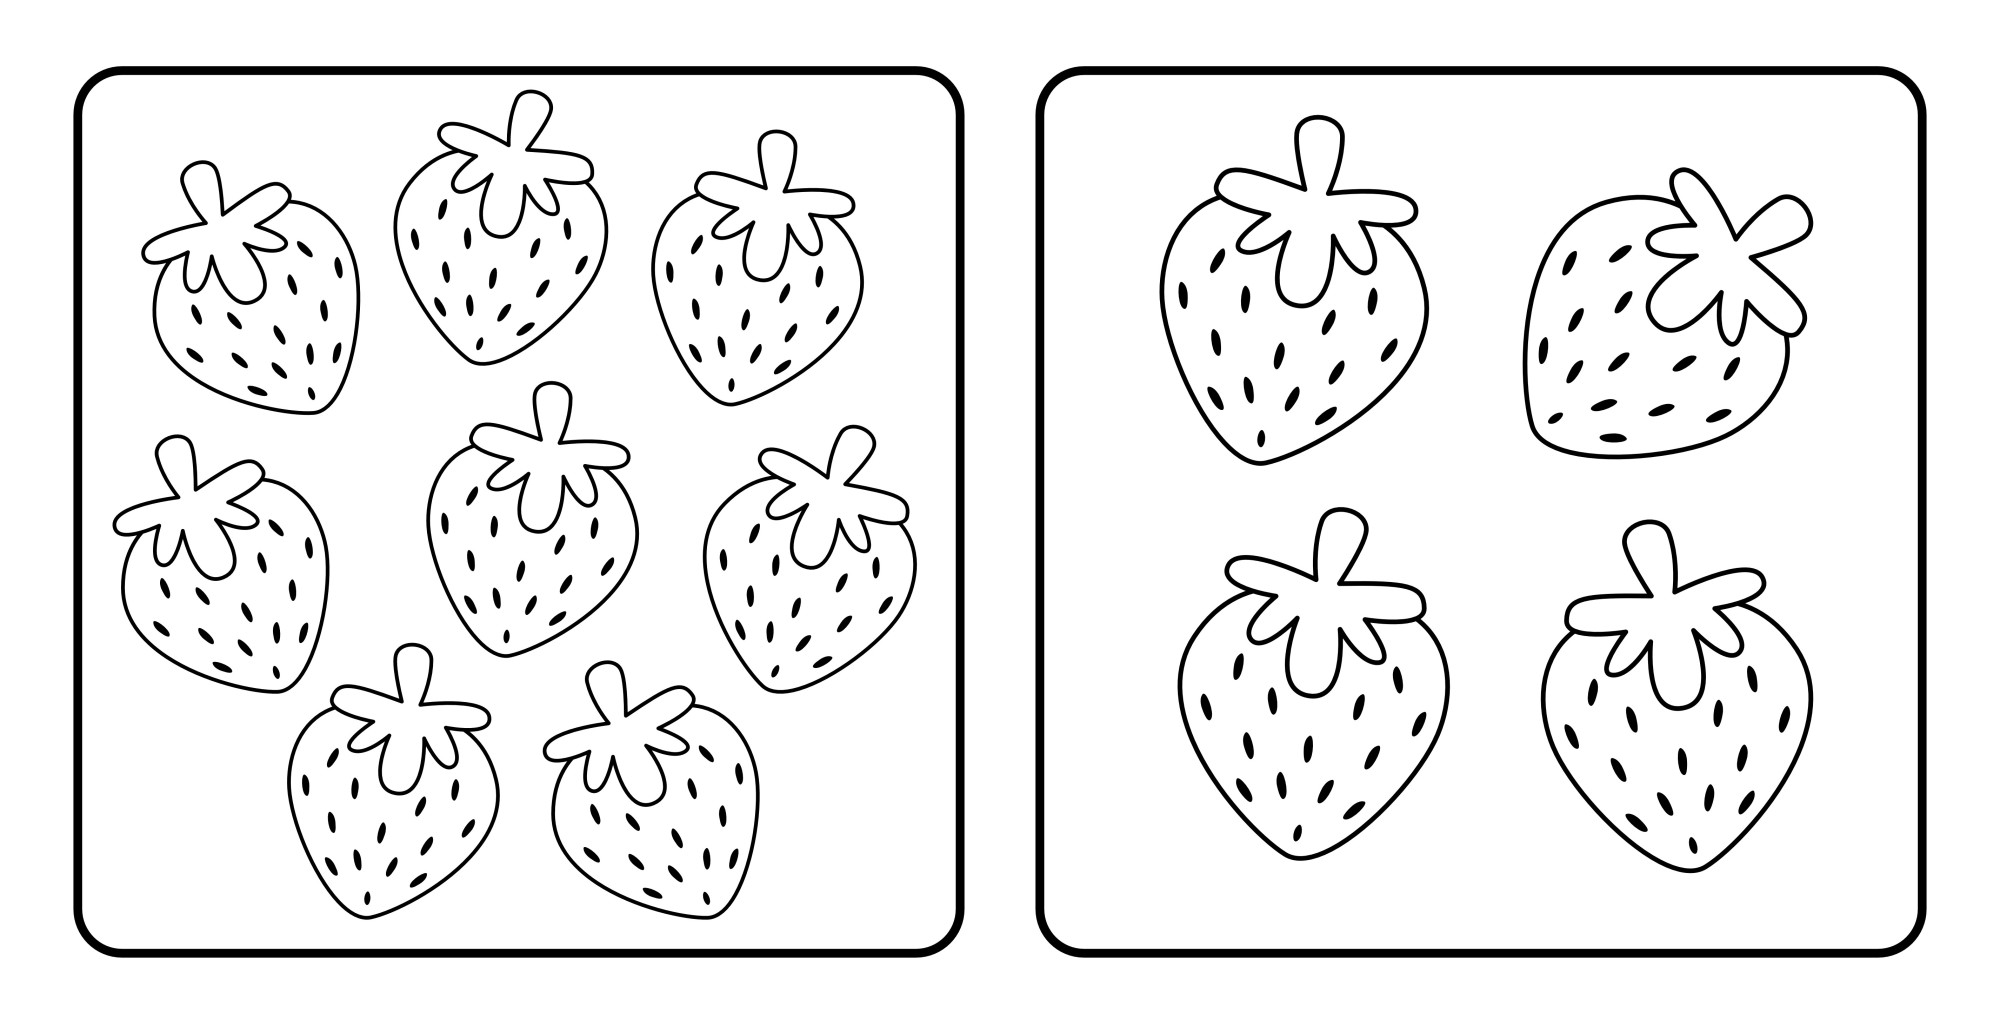 Раскраска для детей: мультяшные ягоды клубники